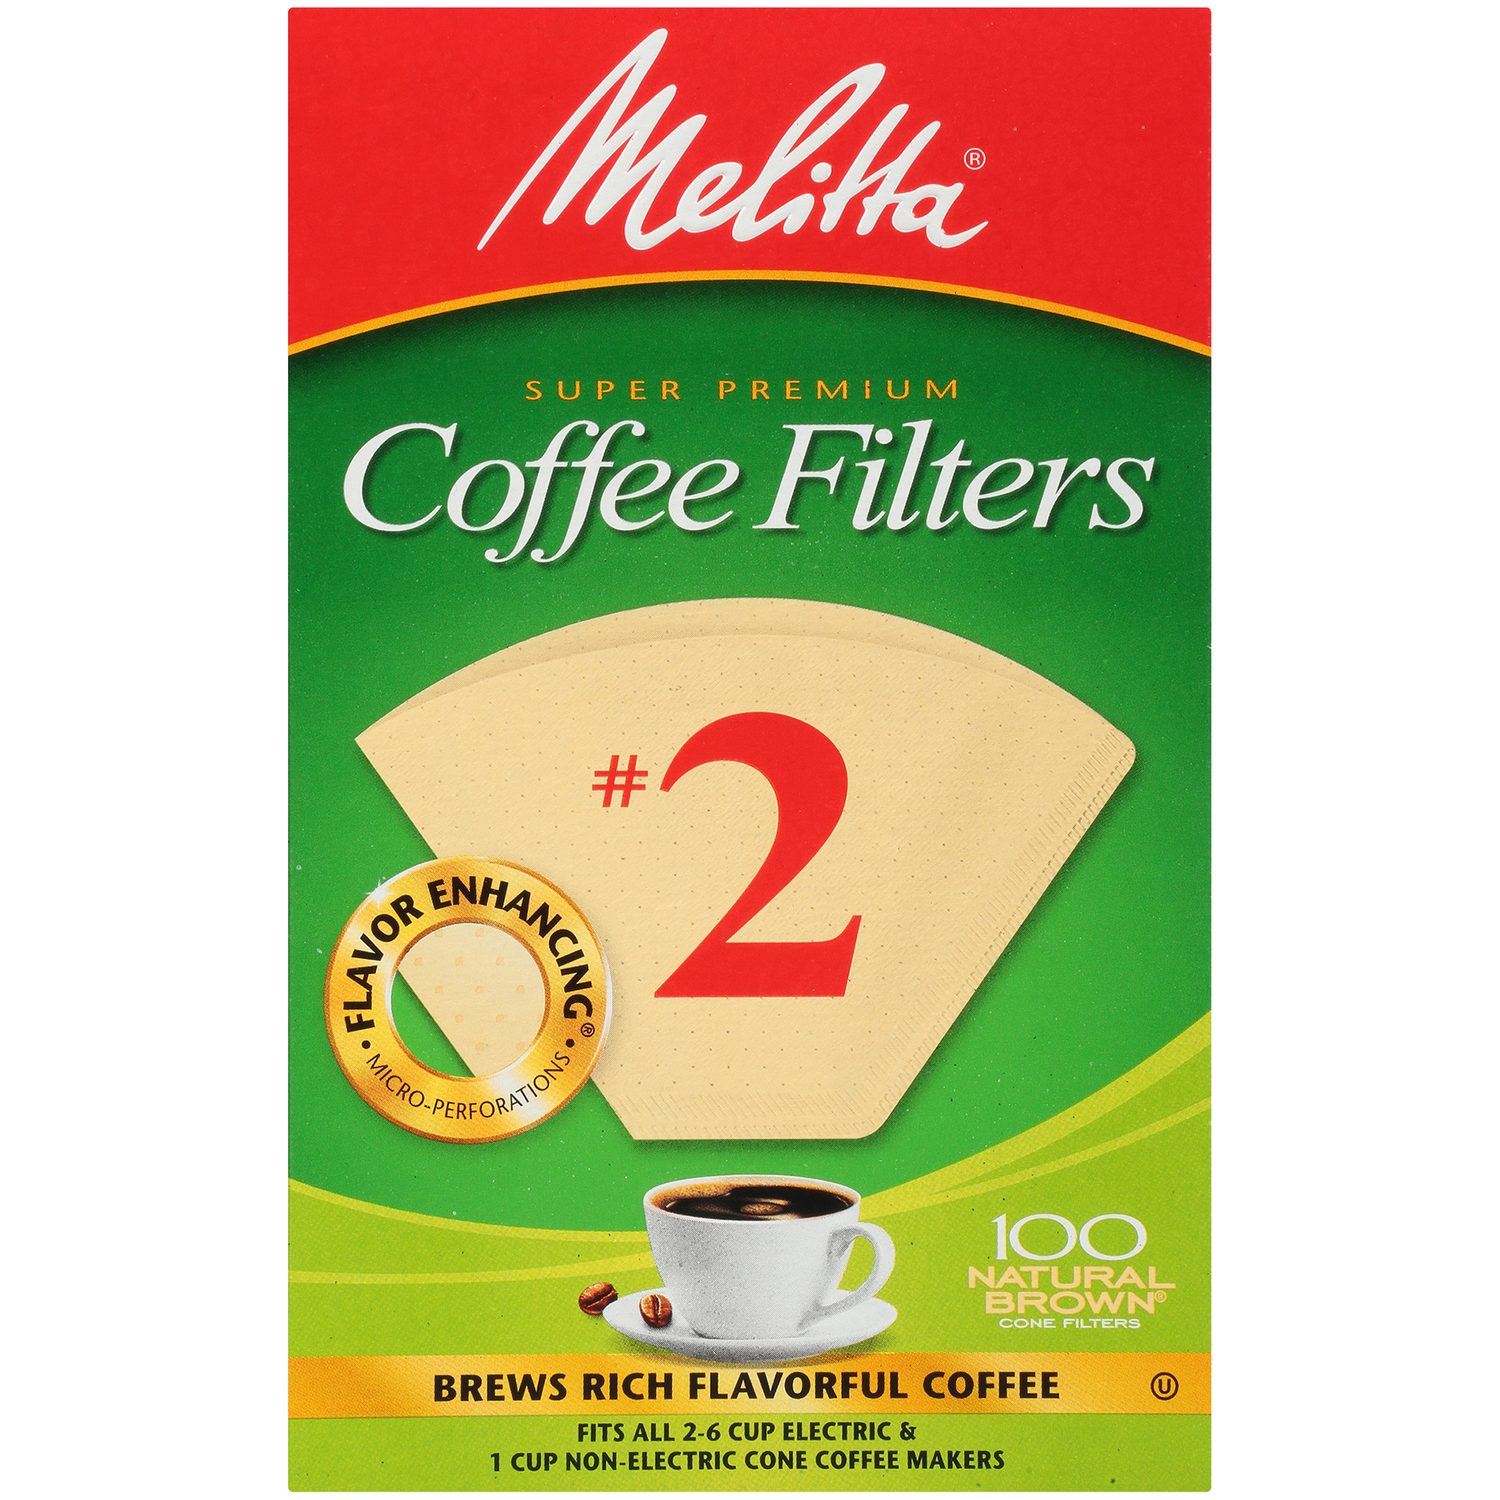 Melitta Perfect Clean-Limpiador líquido de Sistema de Leche para máquinas  de café automáticas (250 ml), Plastic + 178599 Pastilla limpiadoras para  cafeteras : : Hogar y cocina